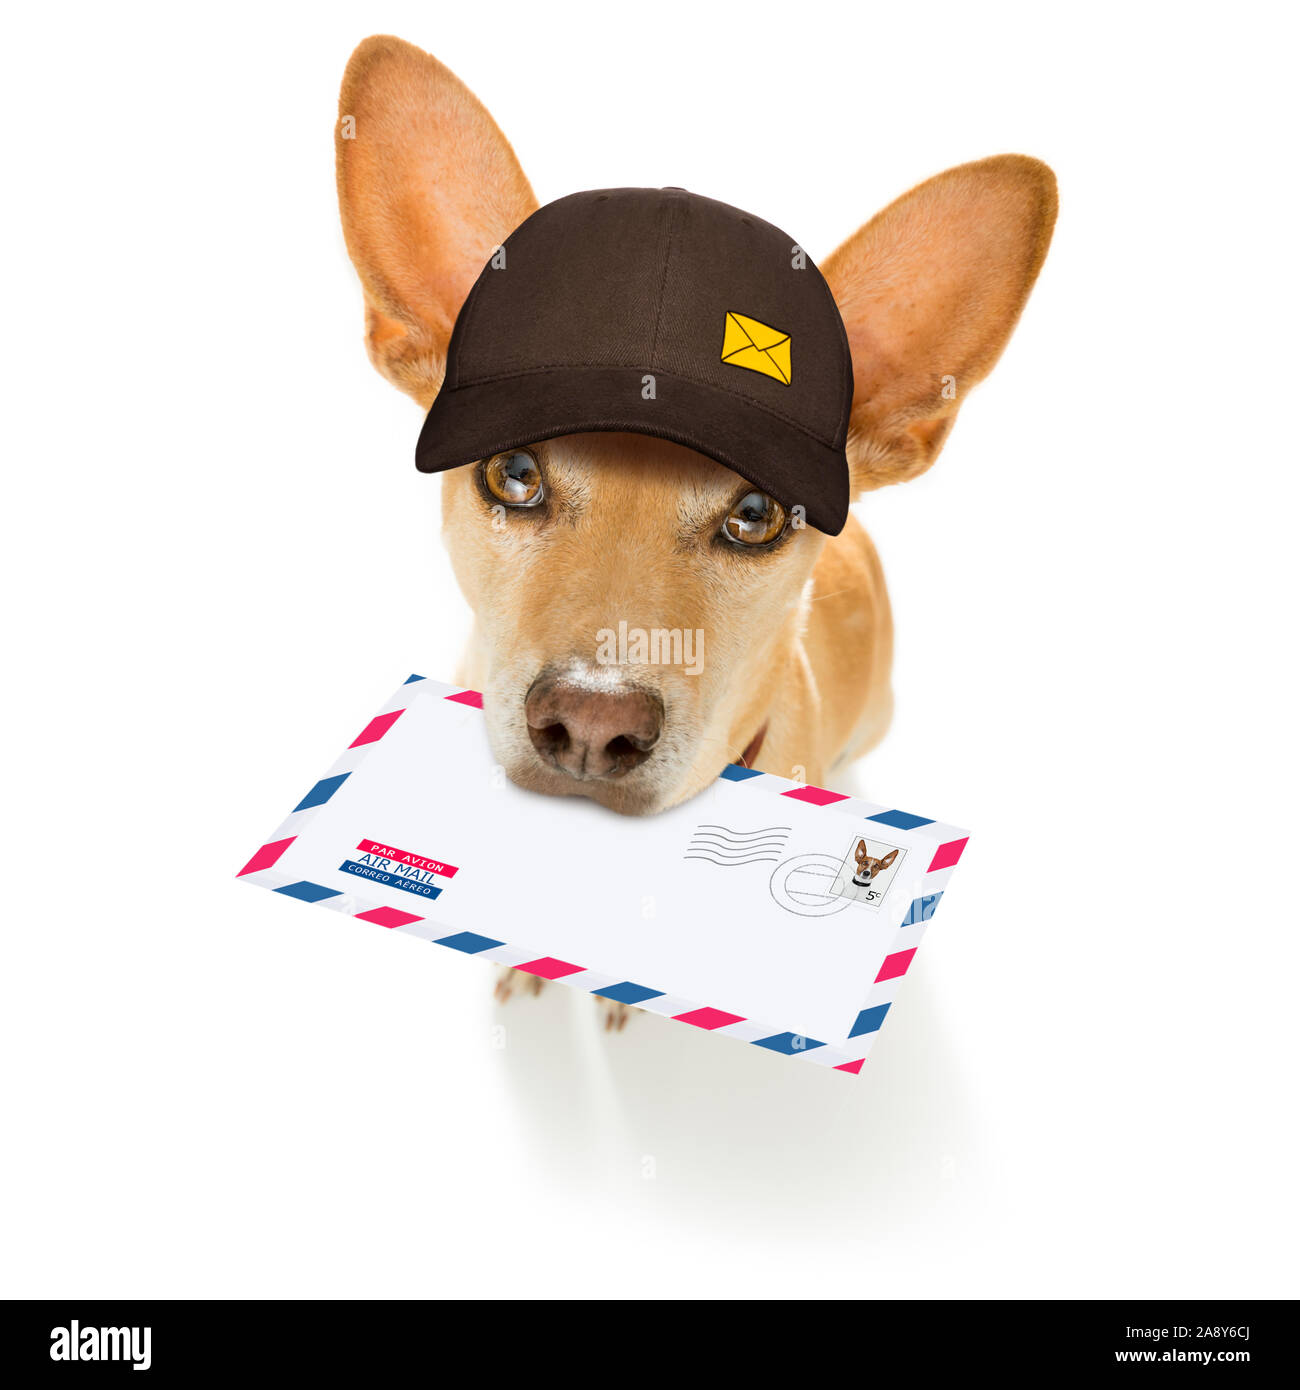 Postman chihuahua dog offrant une grande enveloppe vide blanc vide, avec des boîtes et paquets Banque D'Images